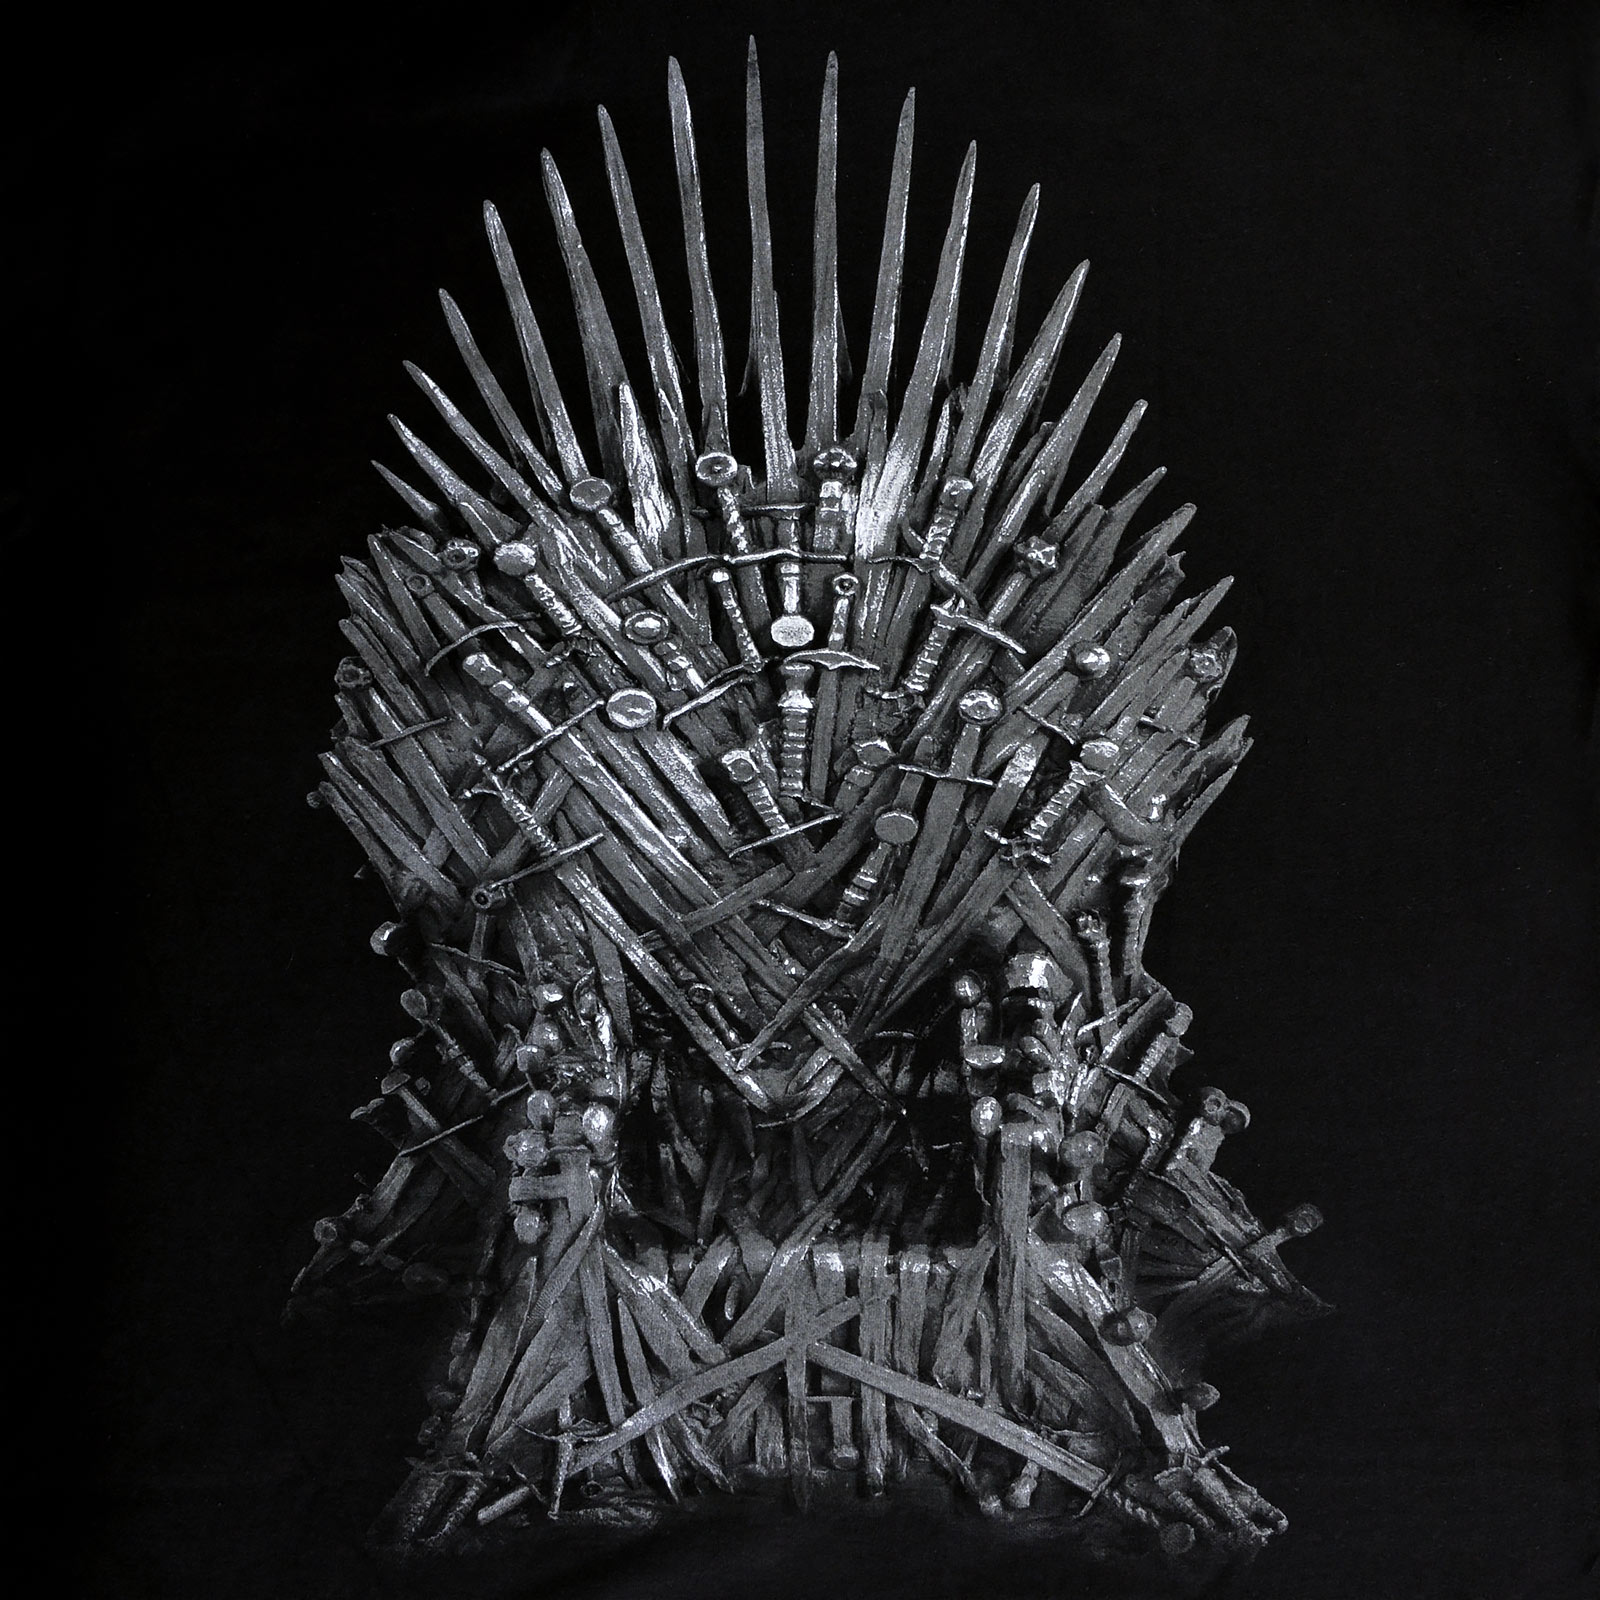 Game of Thrones - Le T-Shirt du Trône de Fer